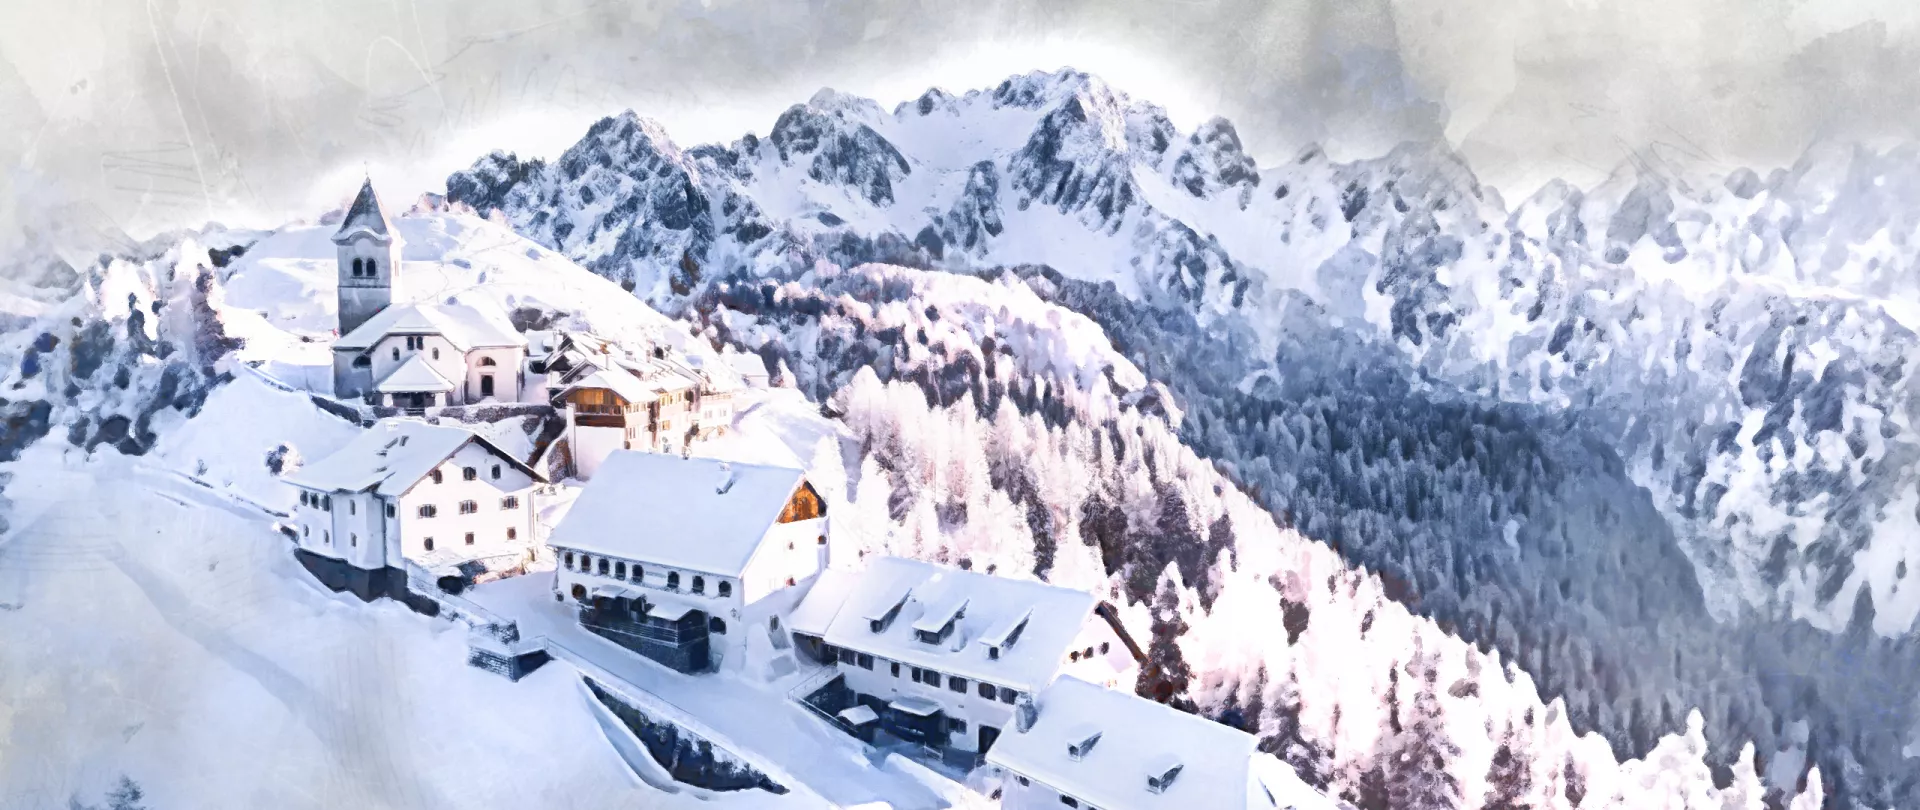 Dorf auf Bergrücken in den schneebedeckten Bergen 